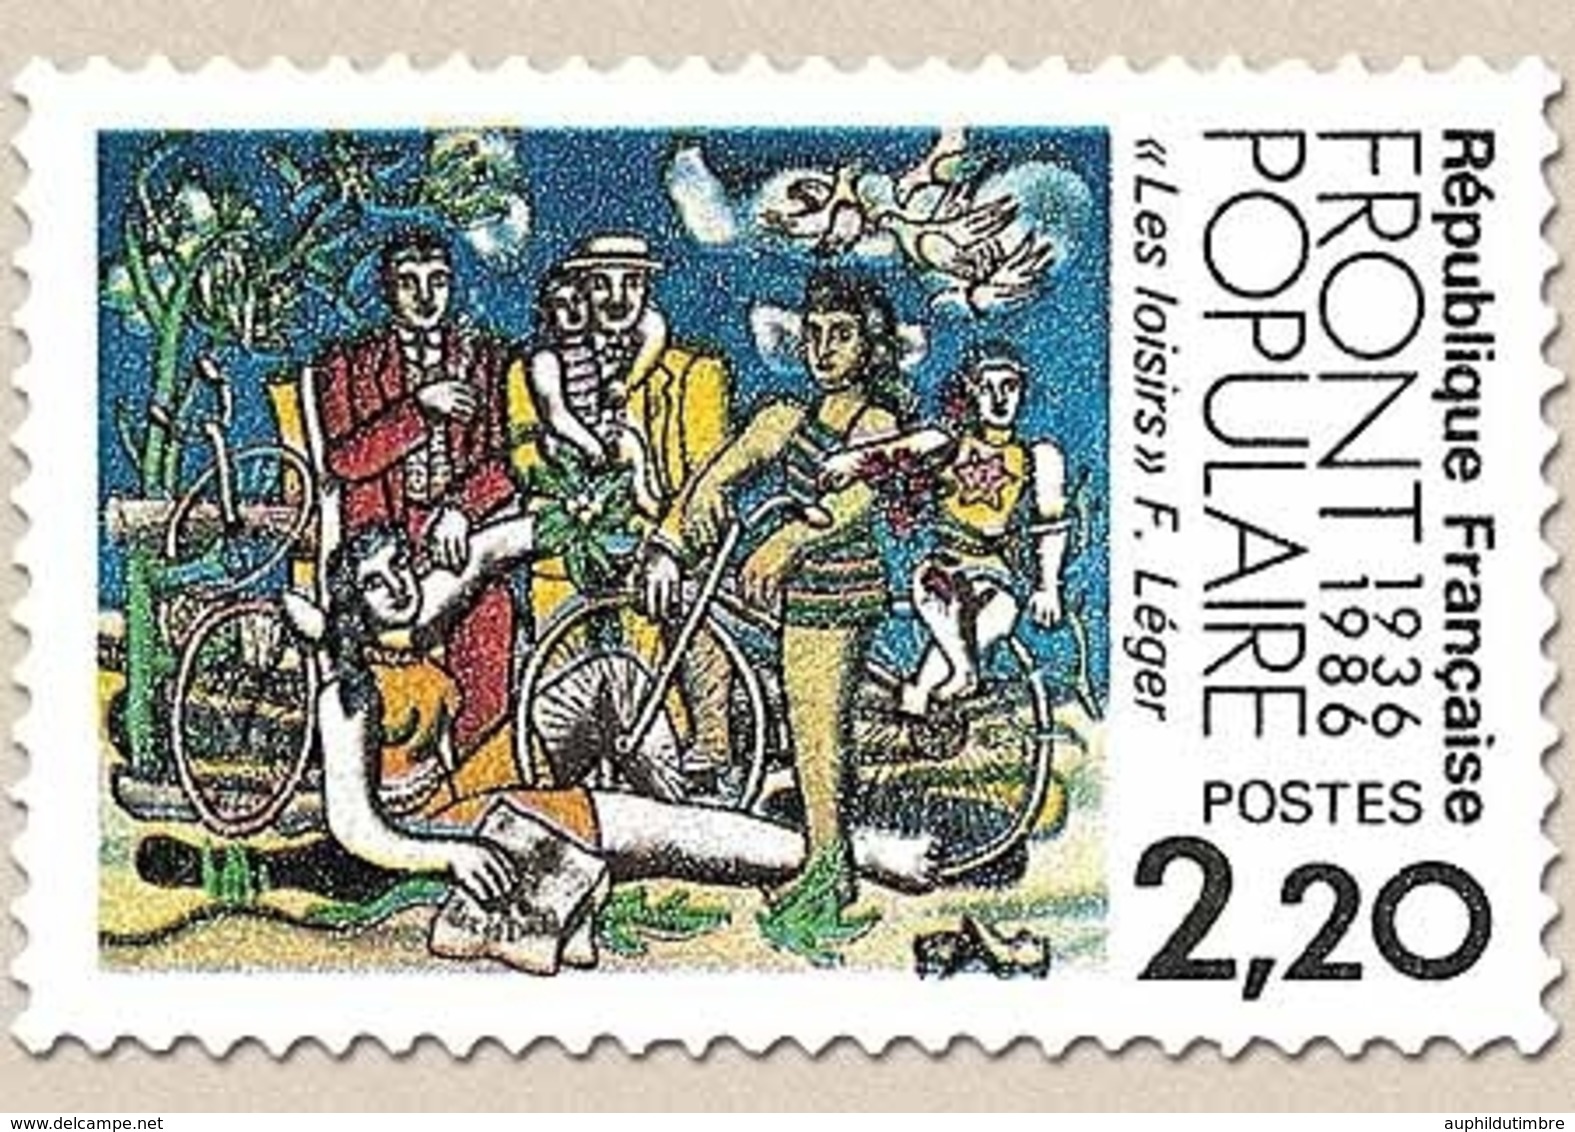 Cinquantenaire Du Front Populaire. Les Loisirs, D'après Fernand Léger. 2f.20 Multicolore Y2394 - Unused Stamps